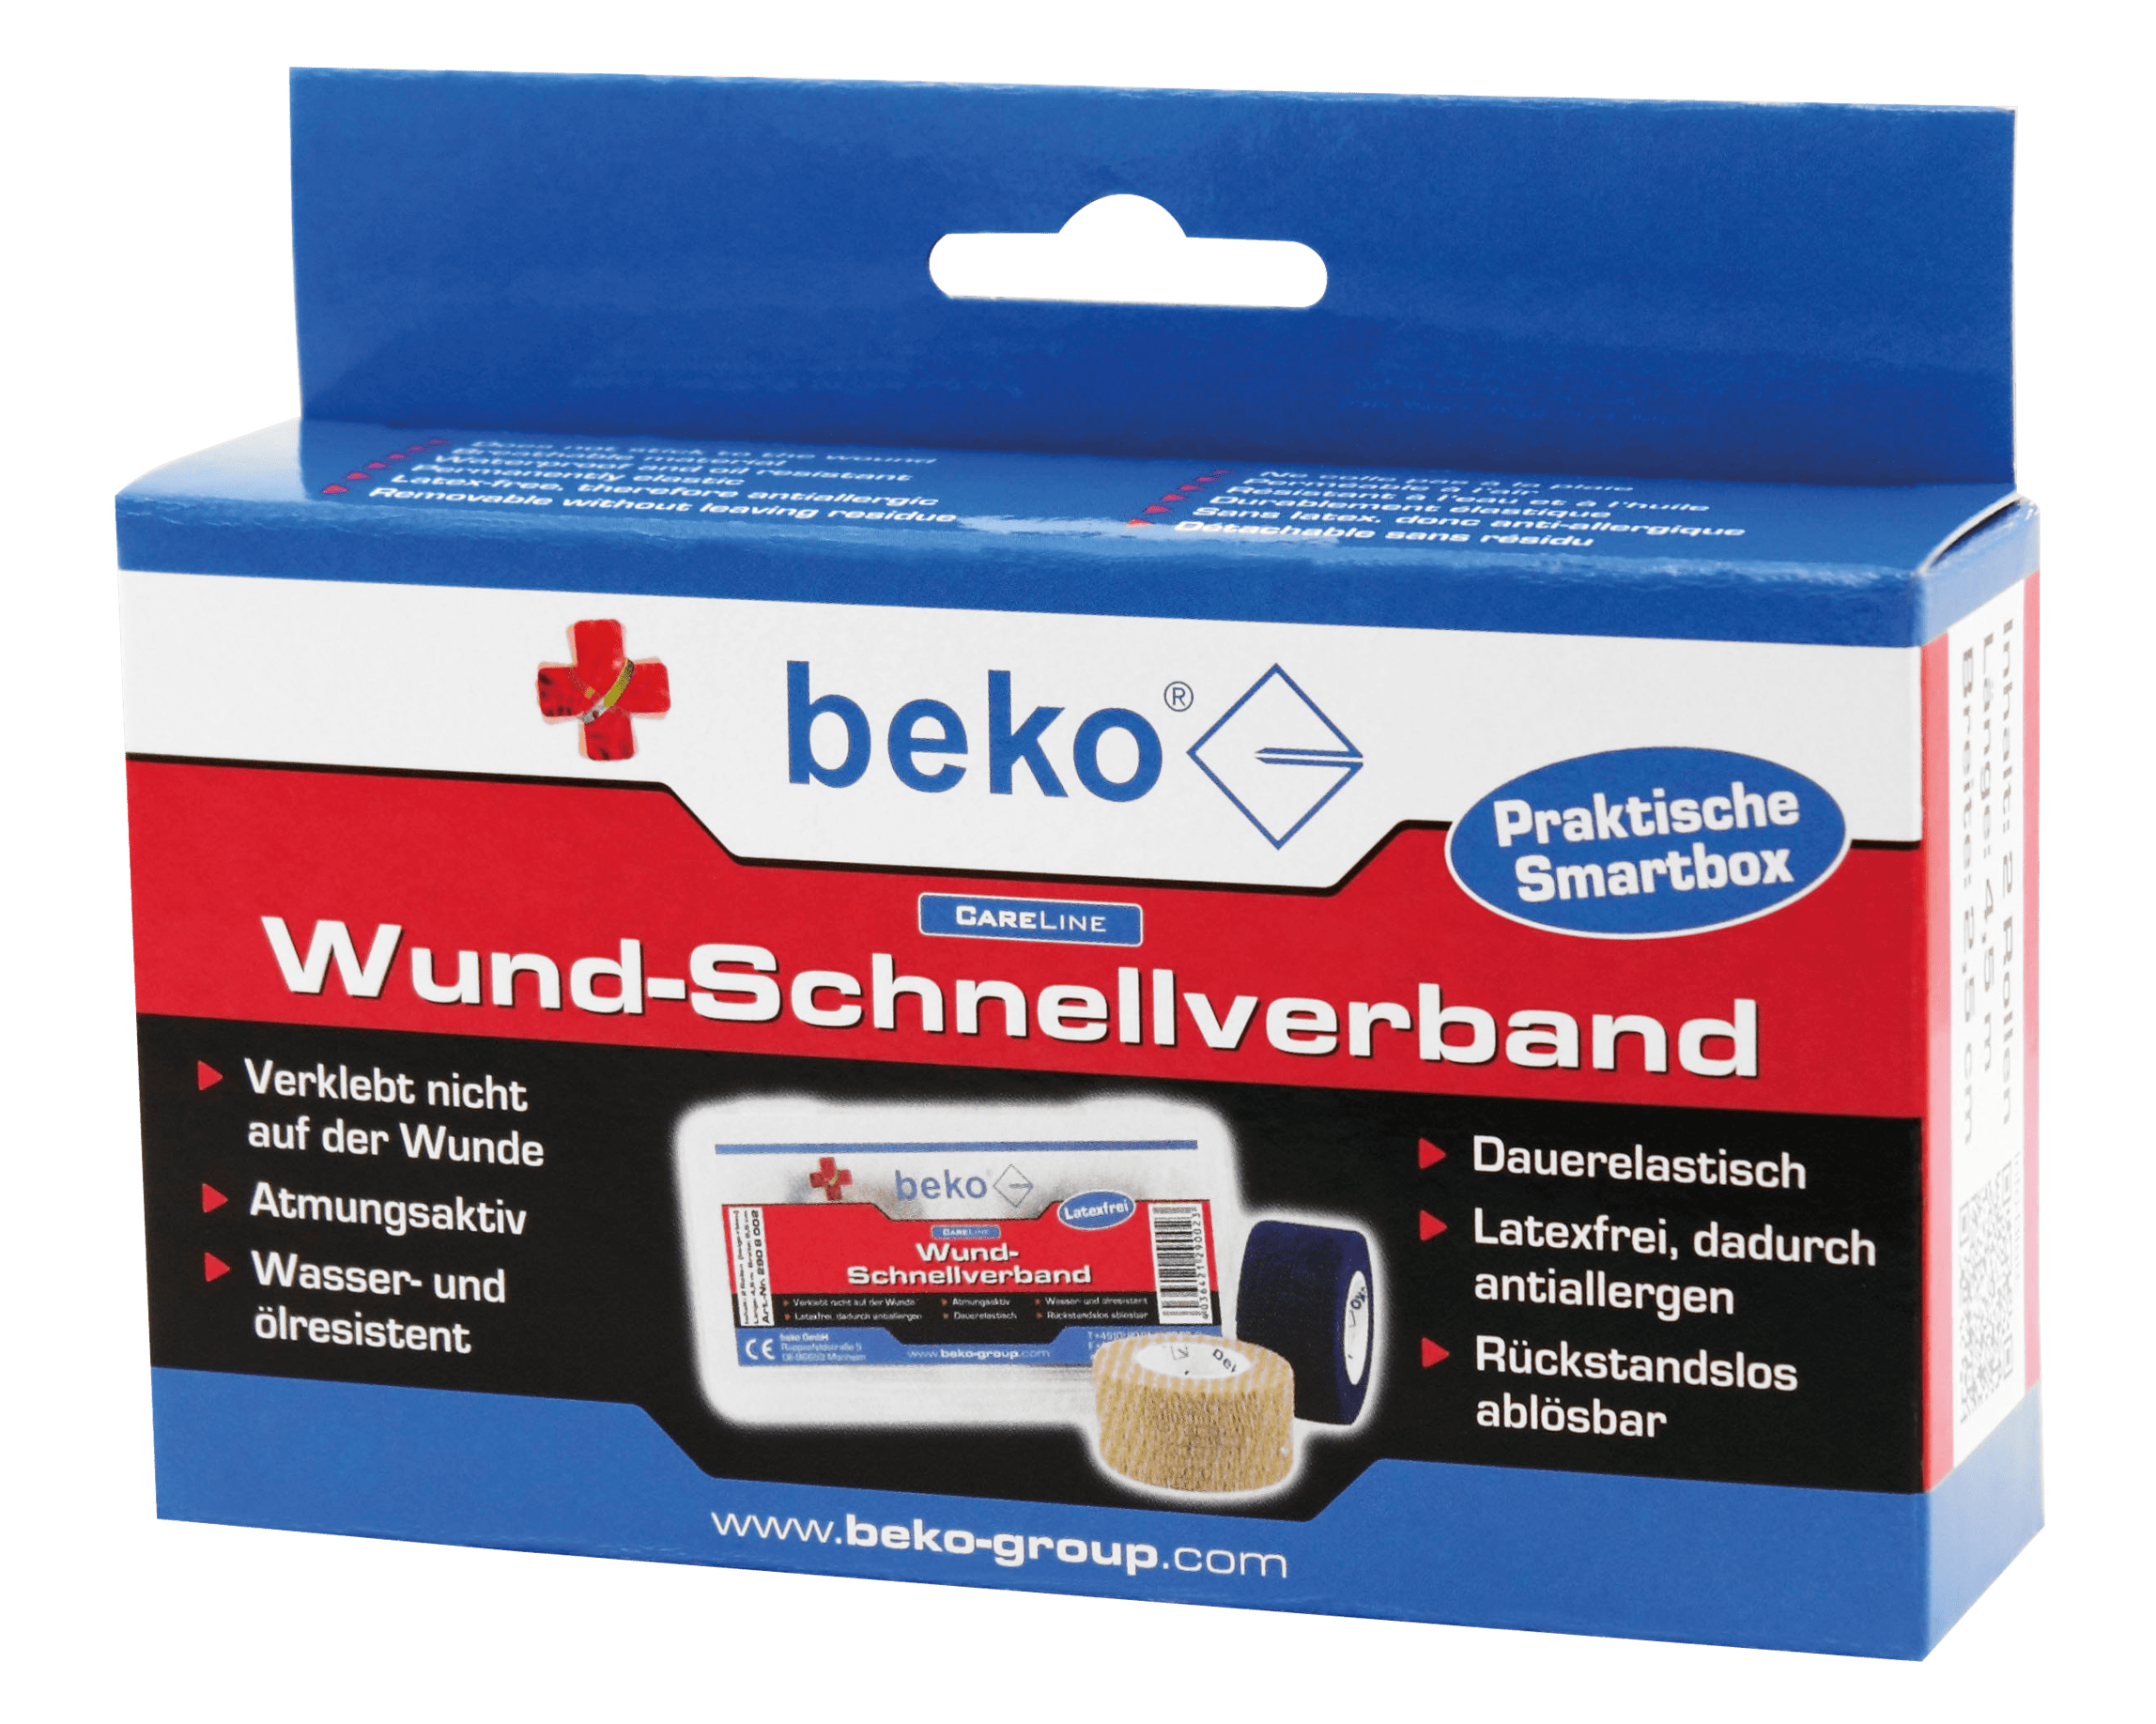 Beko CareLine Wund-Schnellverband Box, 2 Rol. à 6,50 m beige/blau